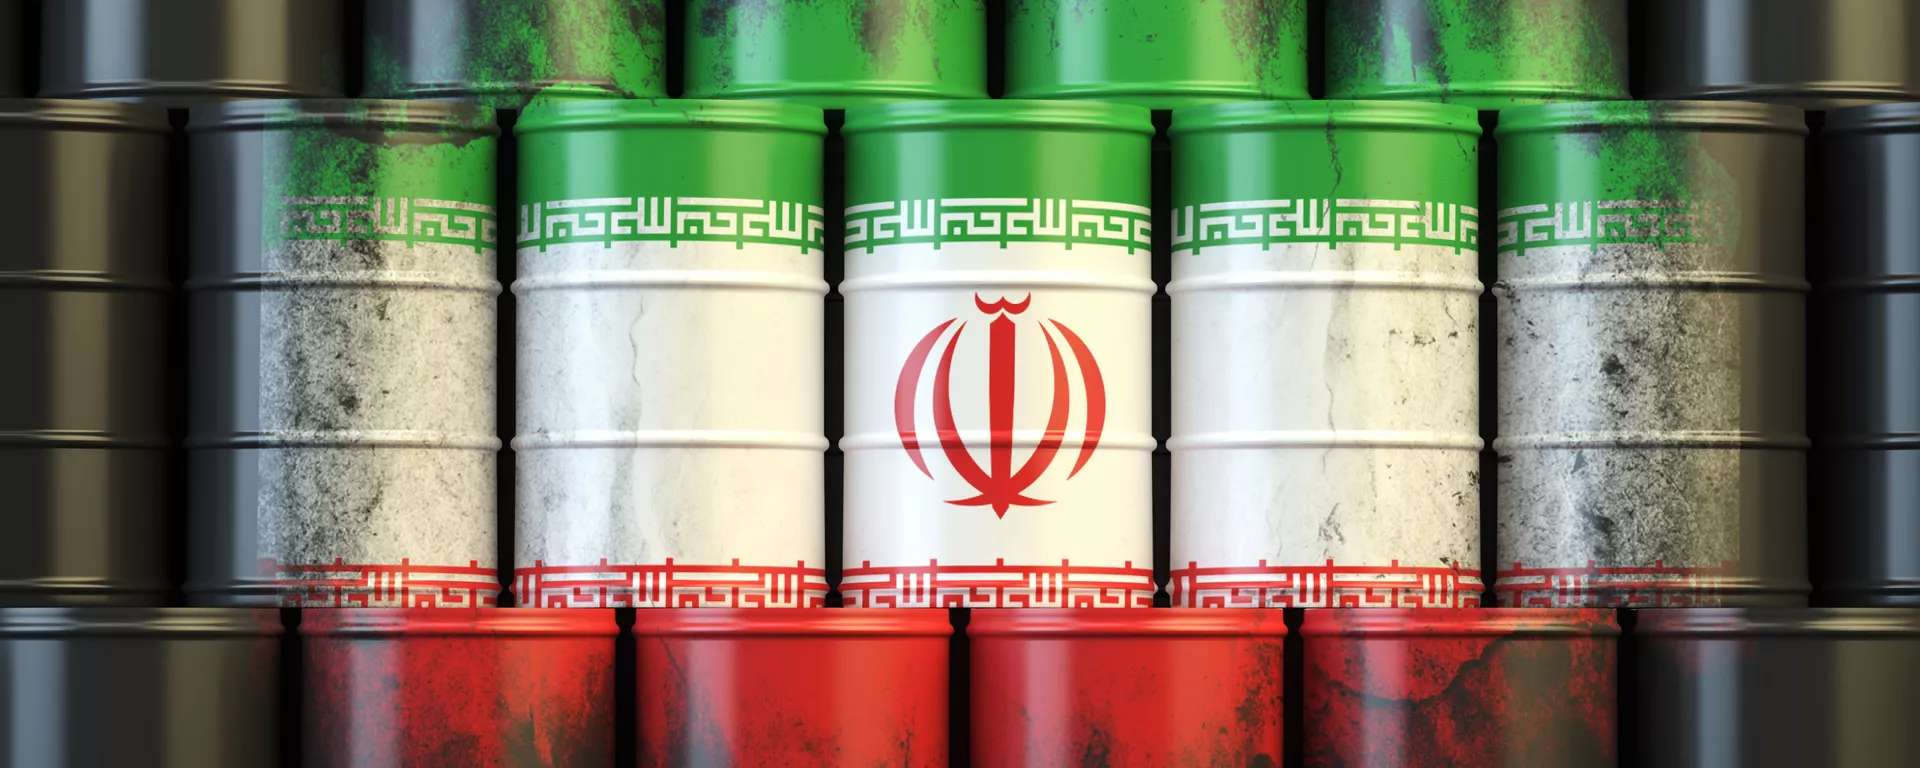 کارشناس حوزه انرژی: خریدار برای نفت ایران در هر حال وجود خواهد داشت